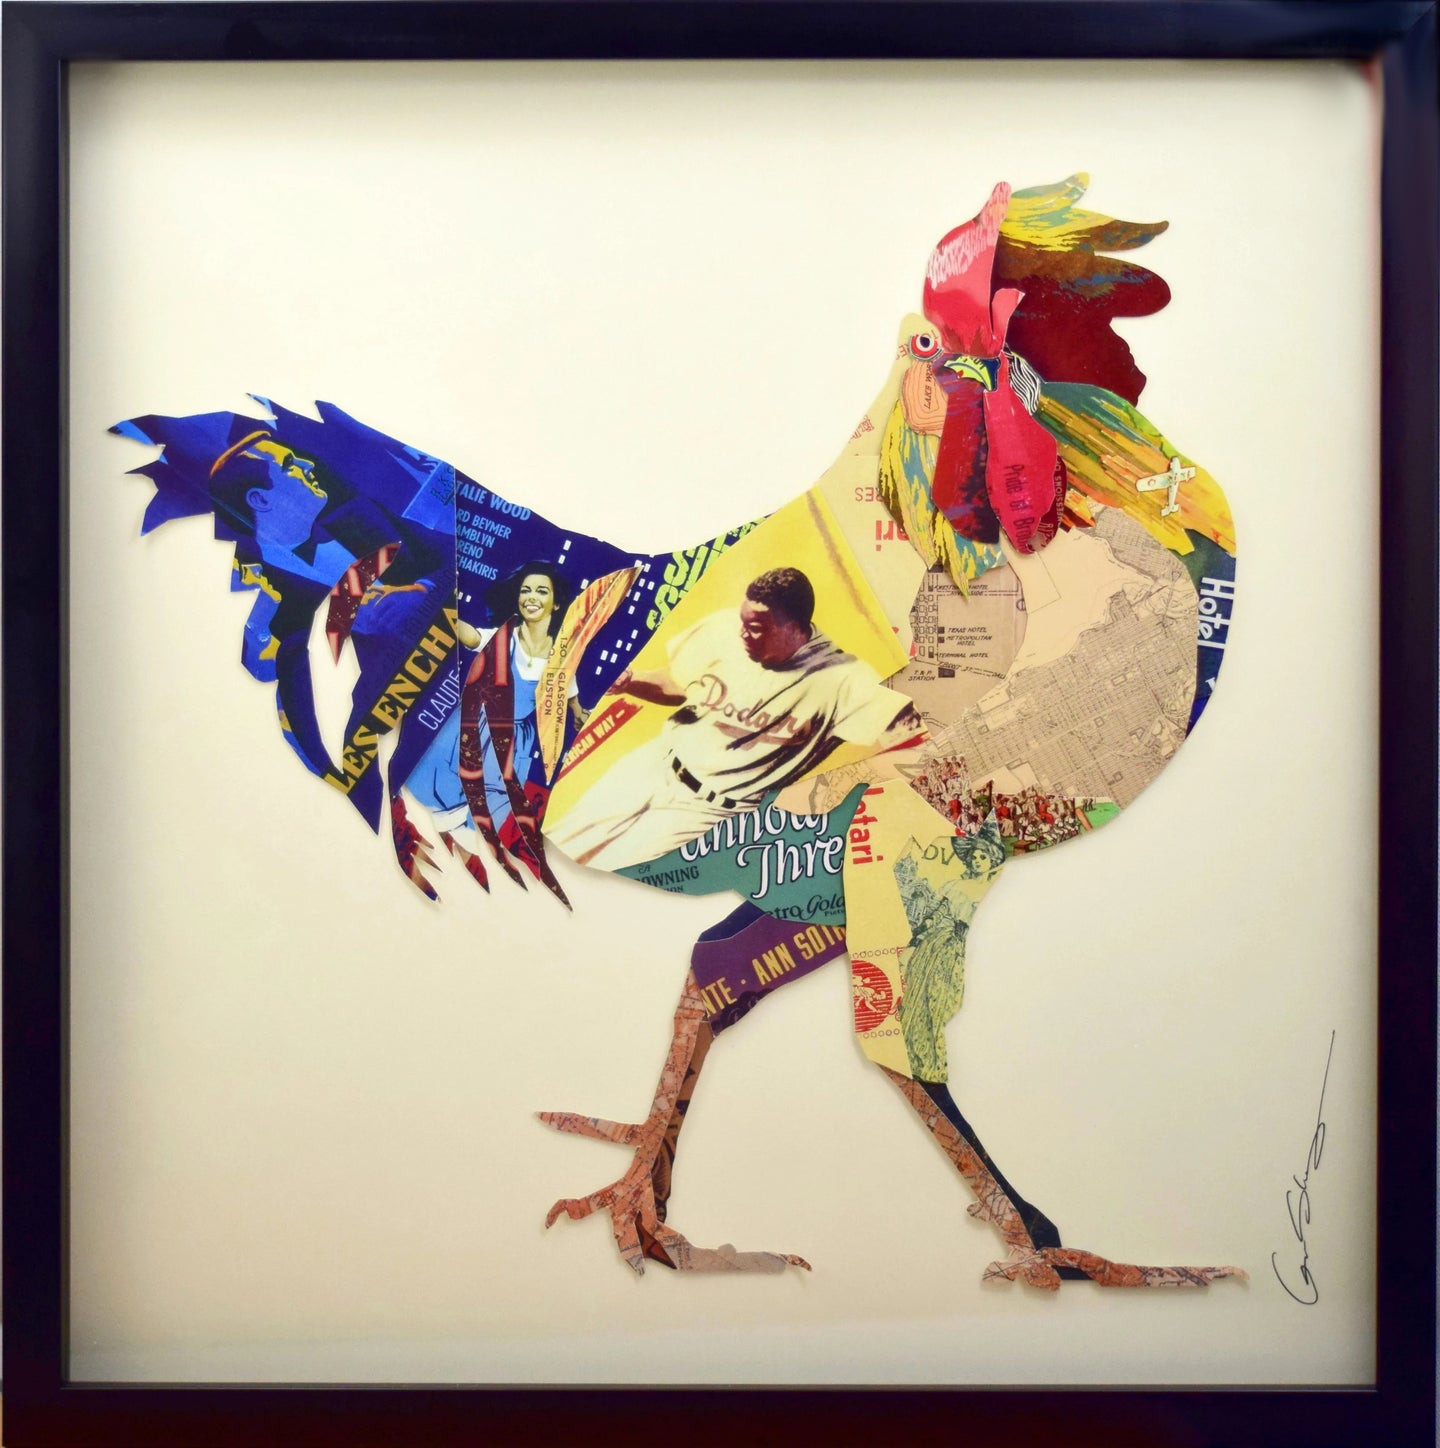 Collage 3D d'artisanat cadre art image murale coq poule lin cuisine